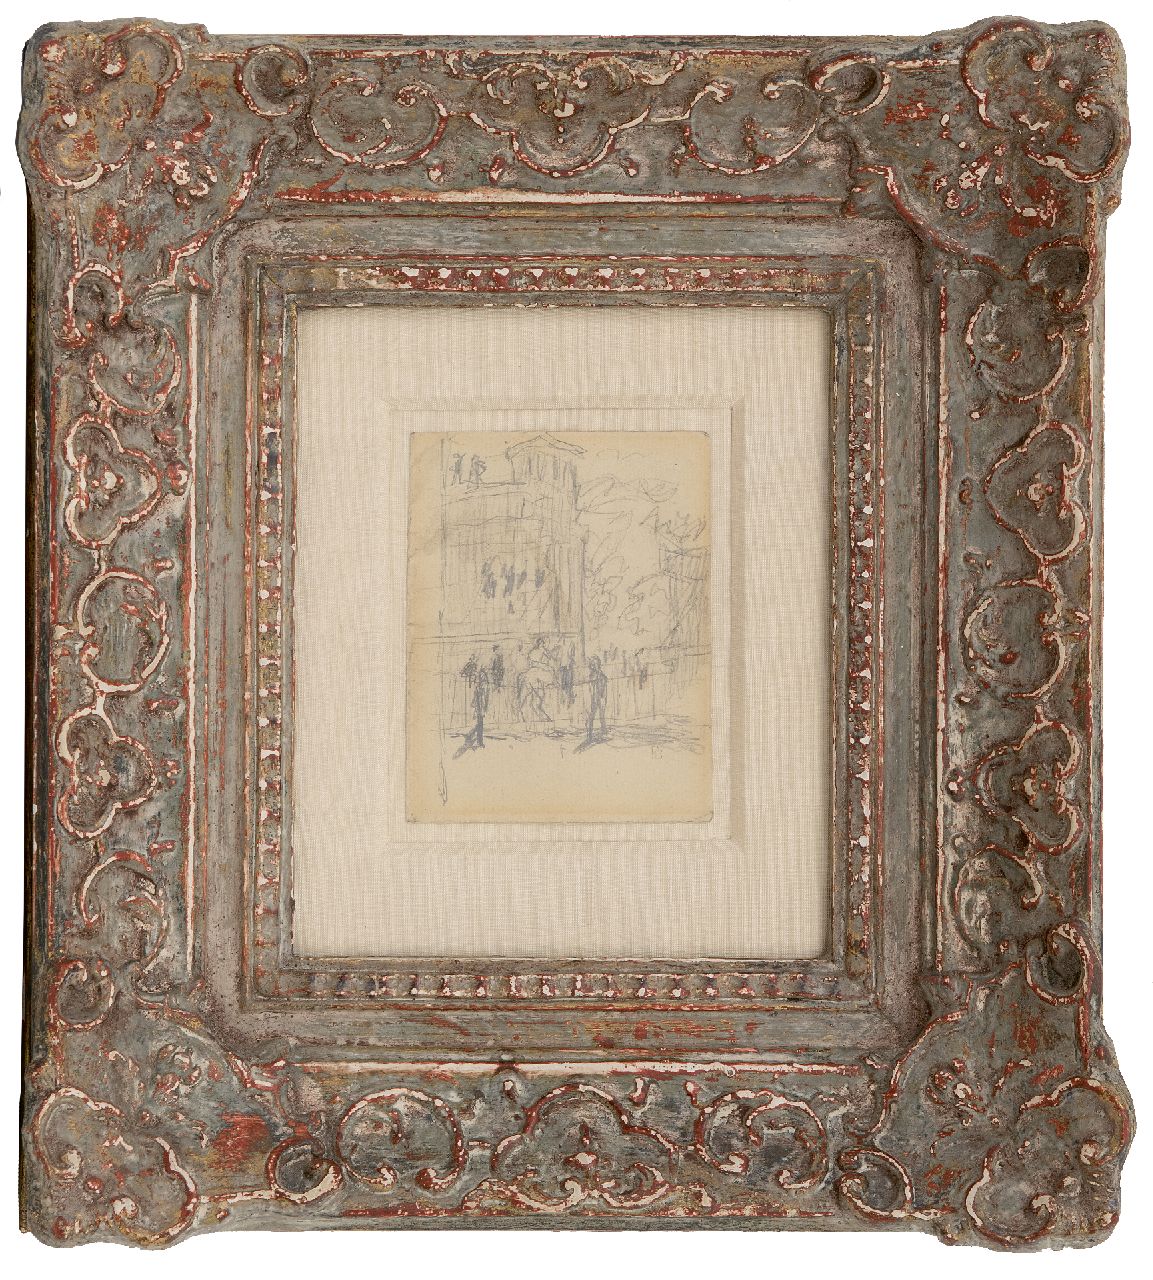 Bonnard P.E.F.  | 'Pierre' Eugène Frédéric Bonnard | Aquarelle und Zeichnungen zum Verkauf angeboten | Auf der Rennbahn, Bleistift auf Papier 11,0 x 8,5 cm, Unterzeichnet r.u. mit Stempel